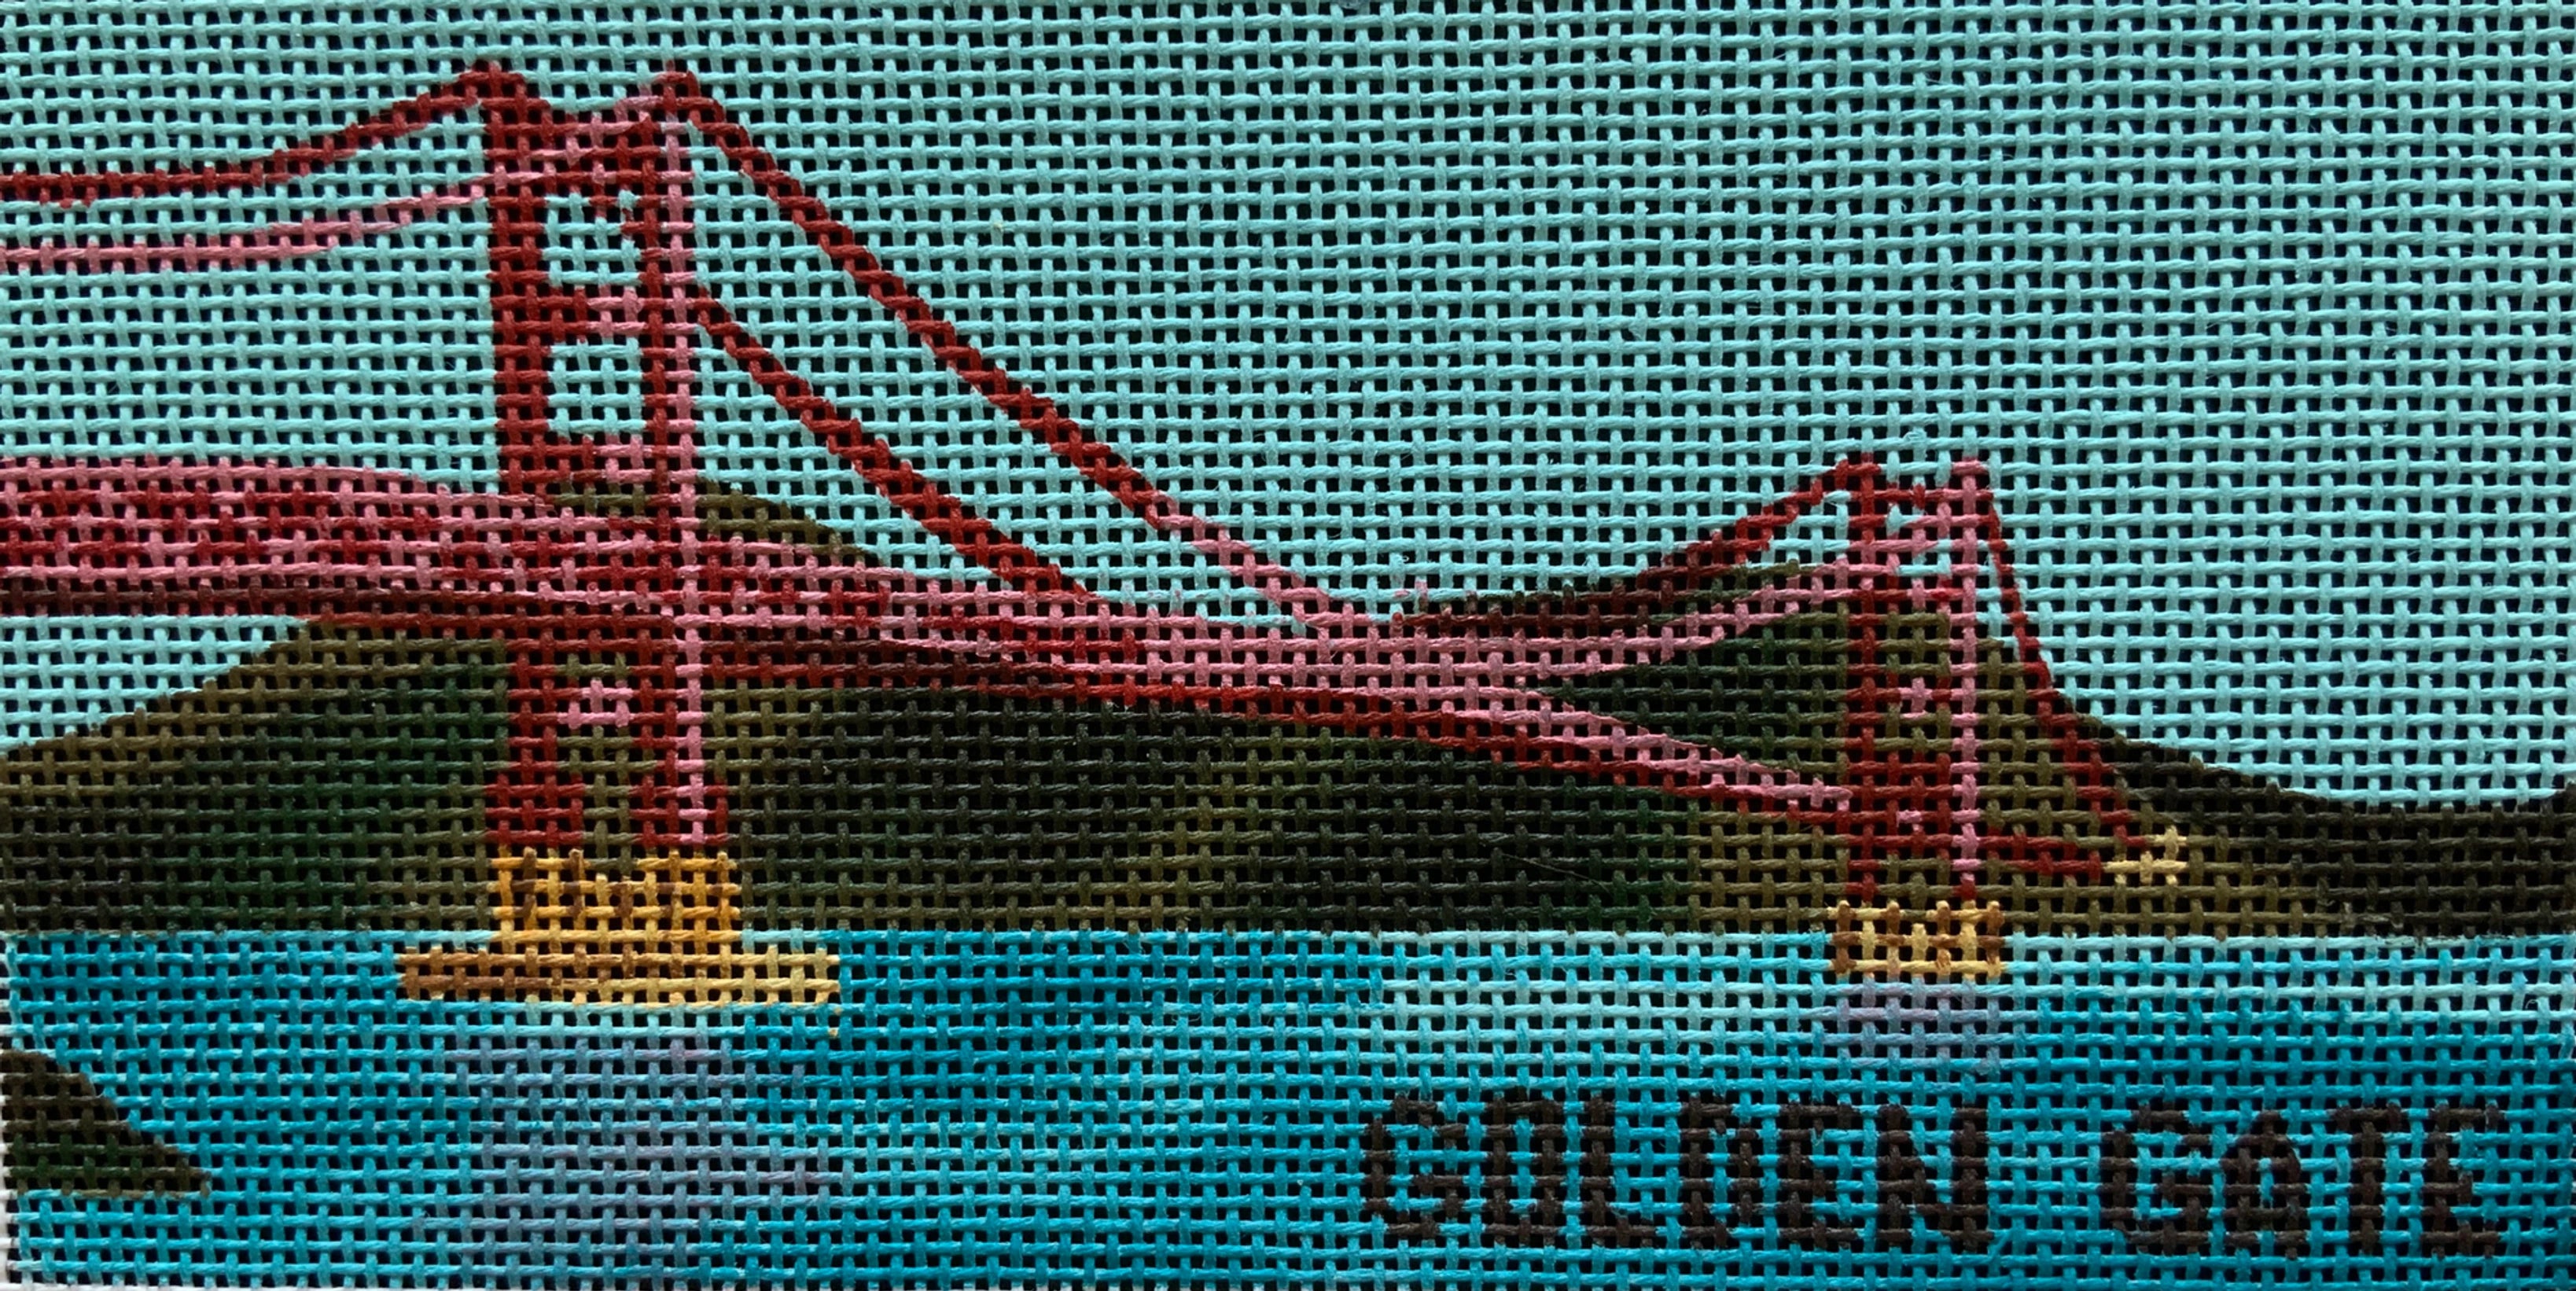 Golden Gate Bridge ME 111